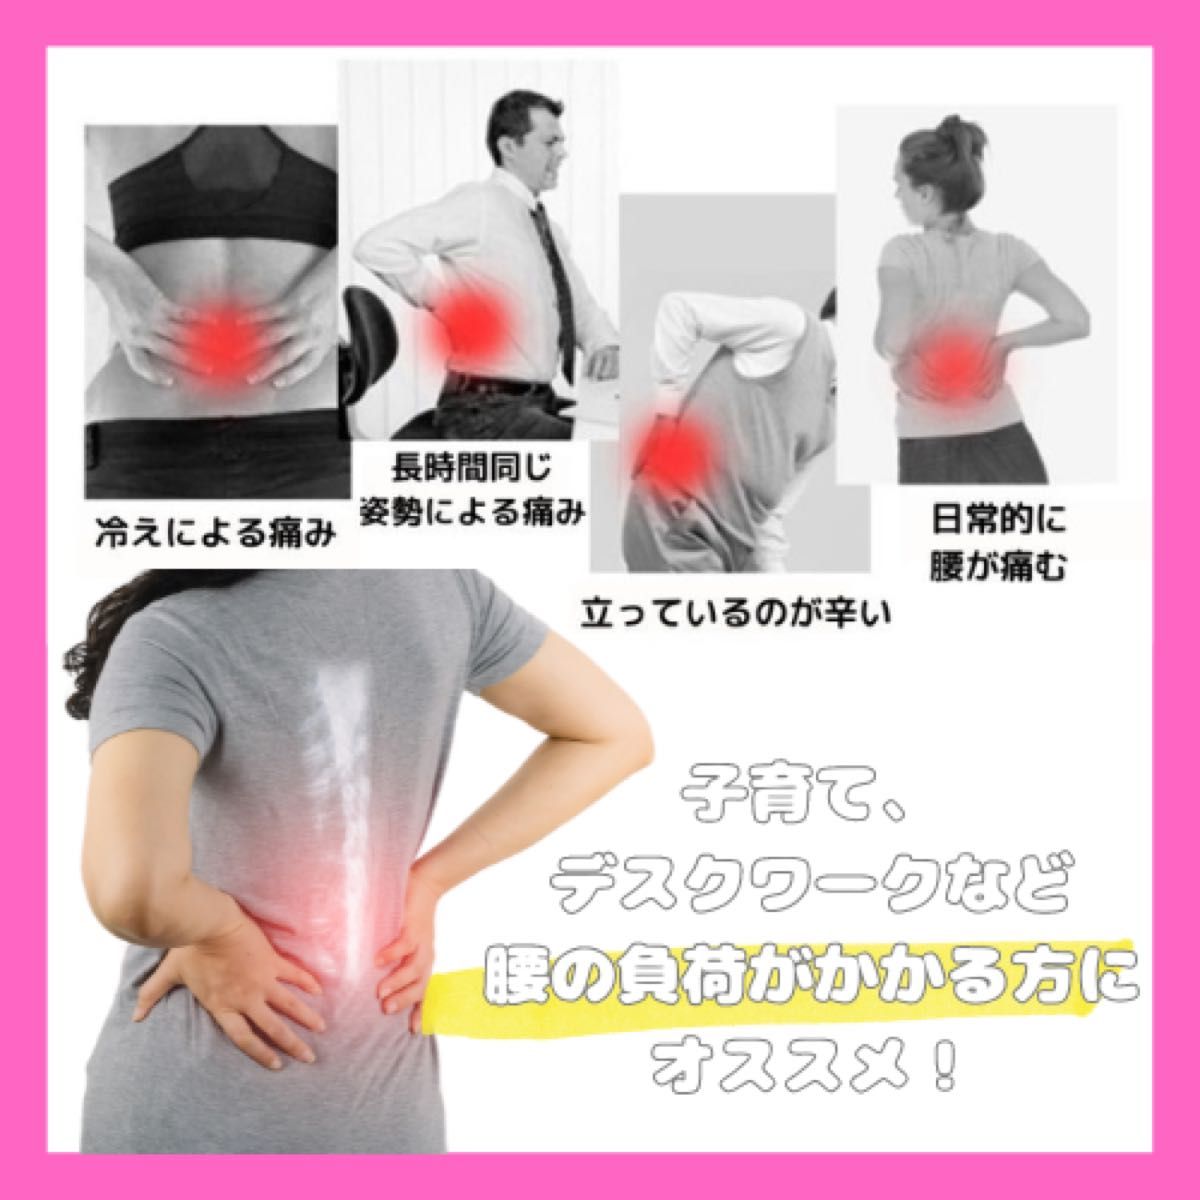 新品【M】腰痛ベルト 骨盤ベルト コルセット ガードナーベルト類似品 男女共用 腰椎サポート 骨盤